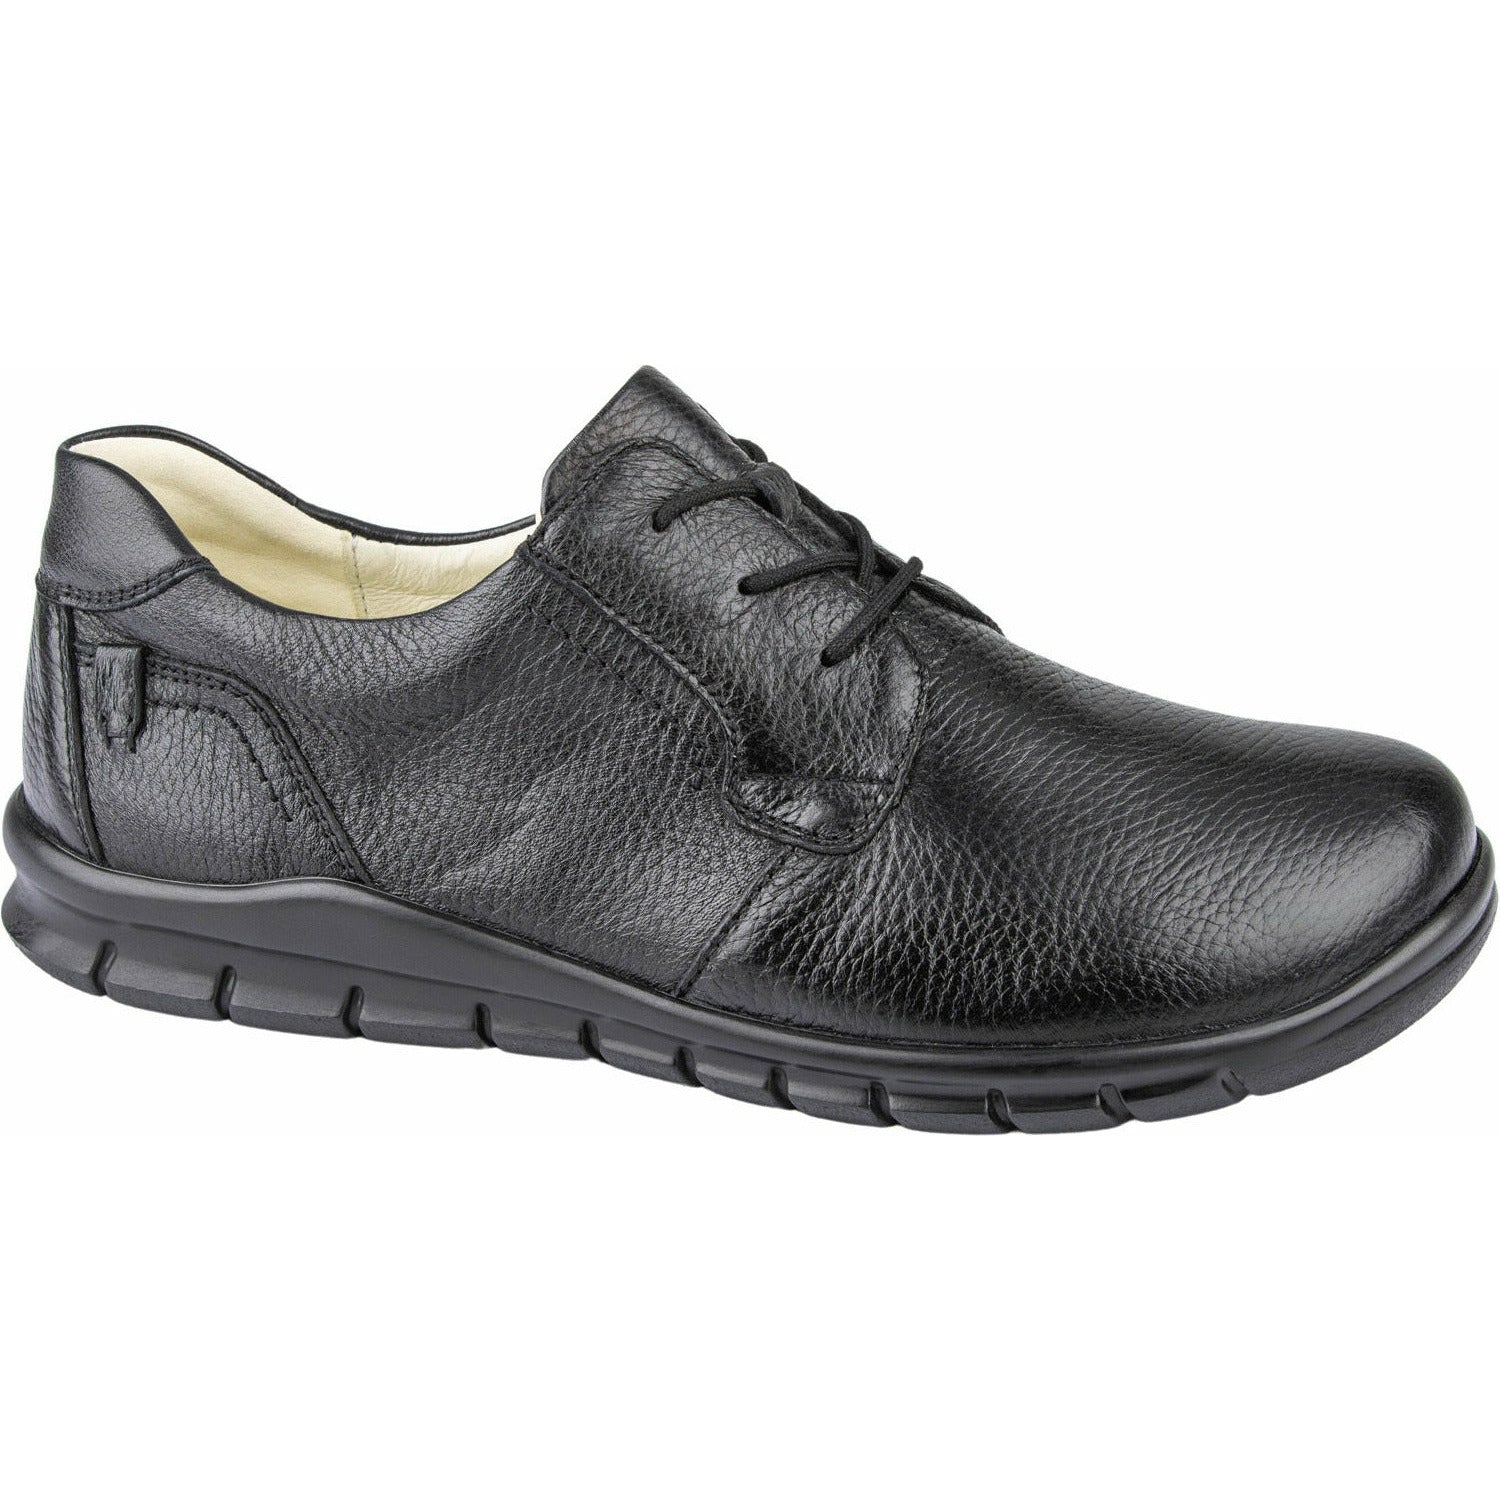 Waldlaufer Hector - Men's Lace Shoe in Black